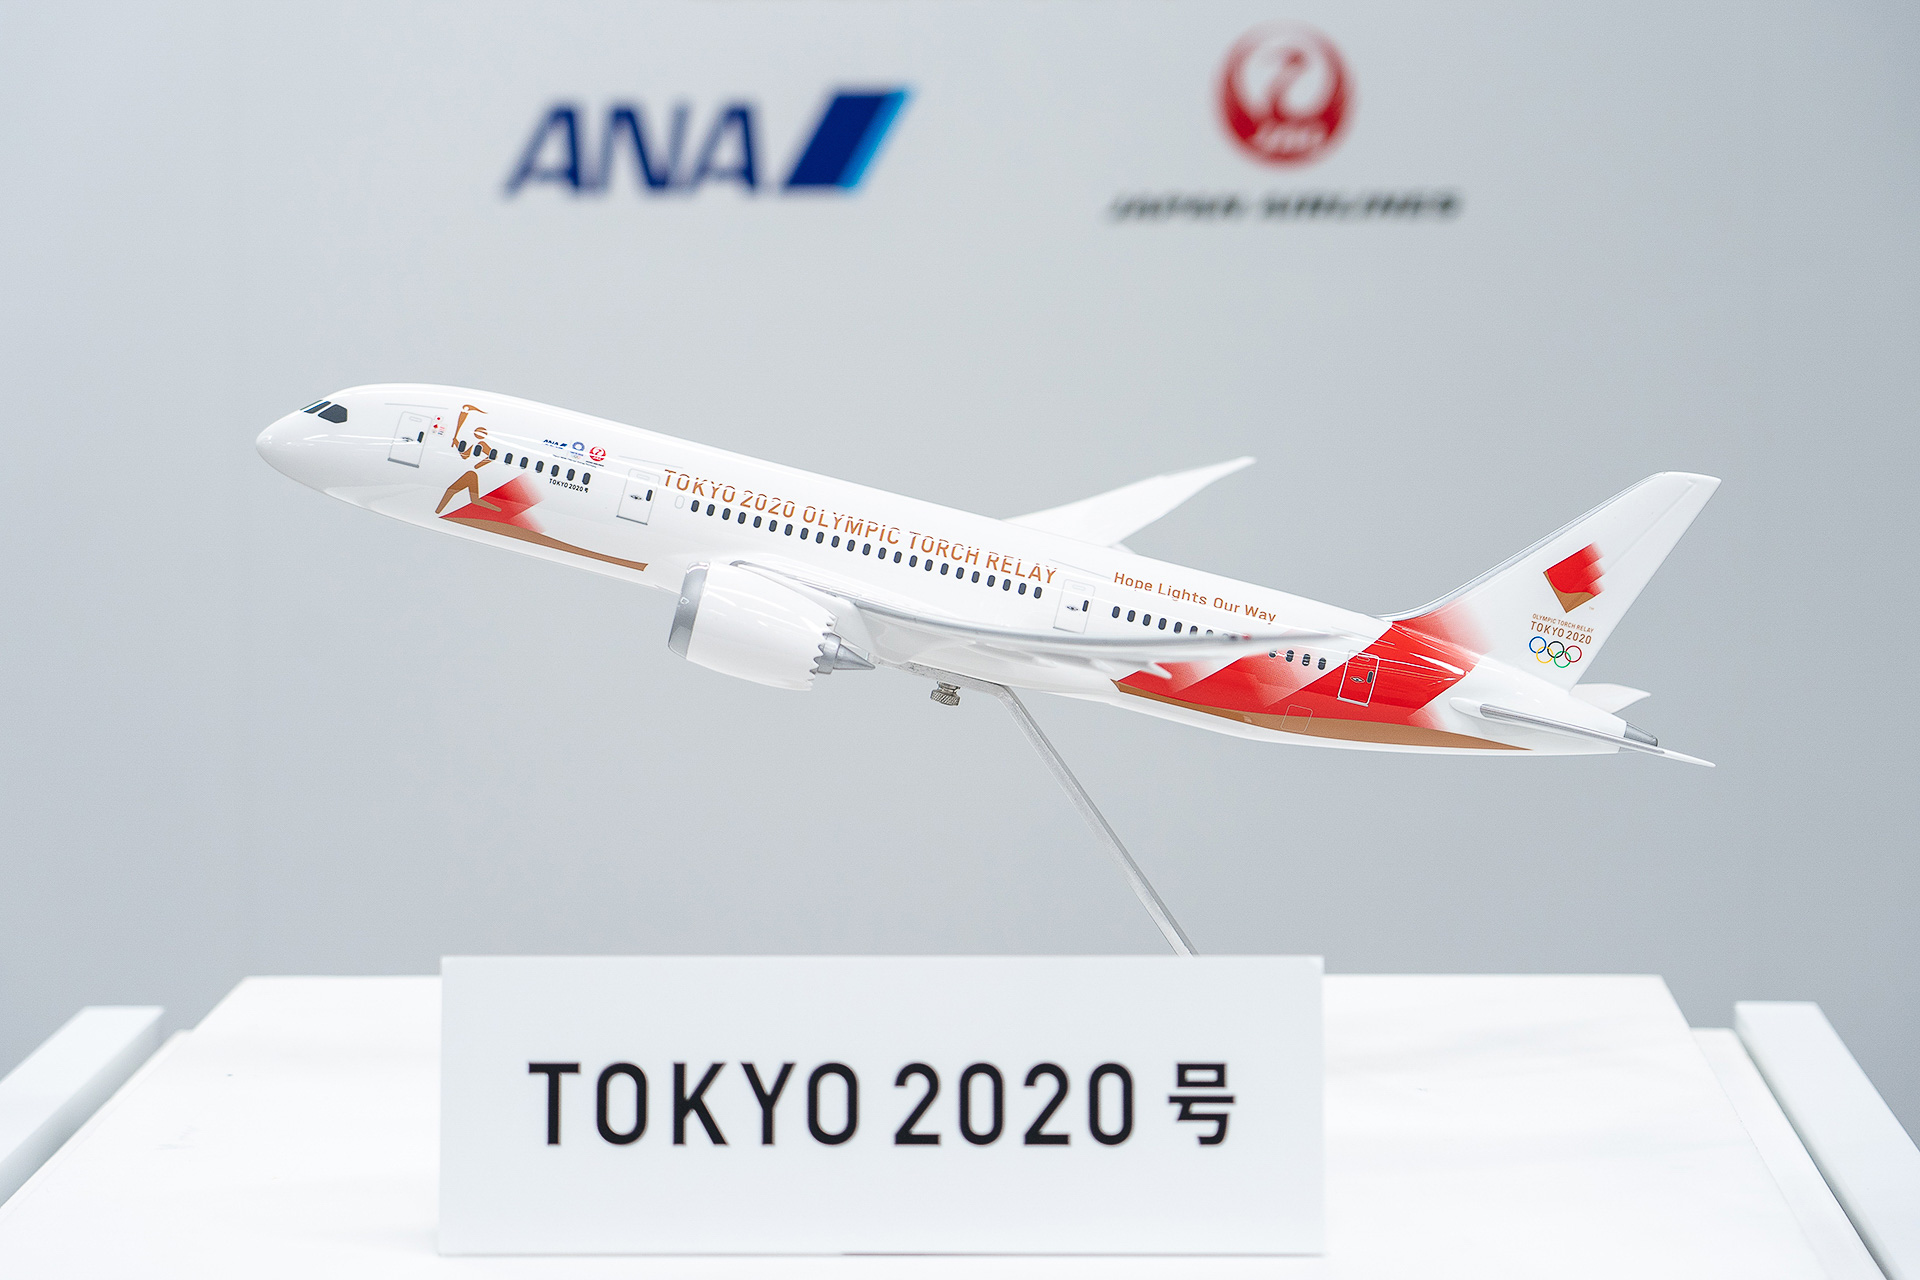 ANA・JALのロゴが入った「東京2020オリンピック聖火特別輸送機“TOKYO 